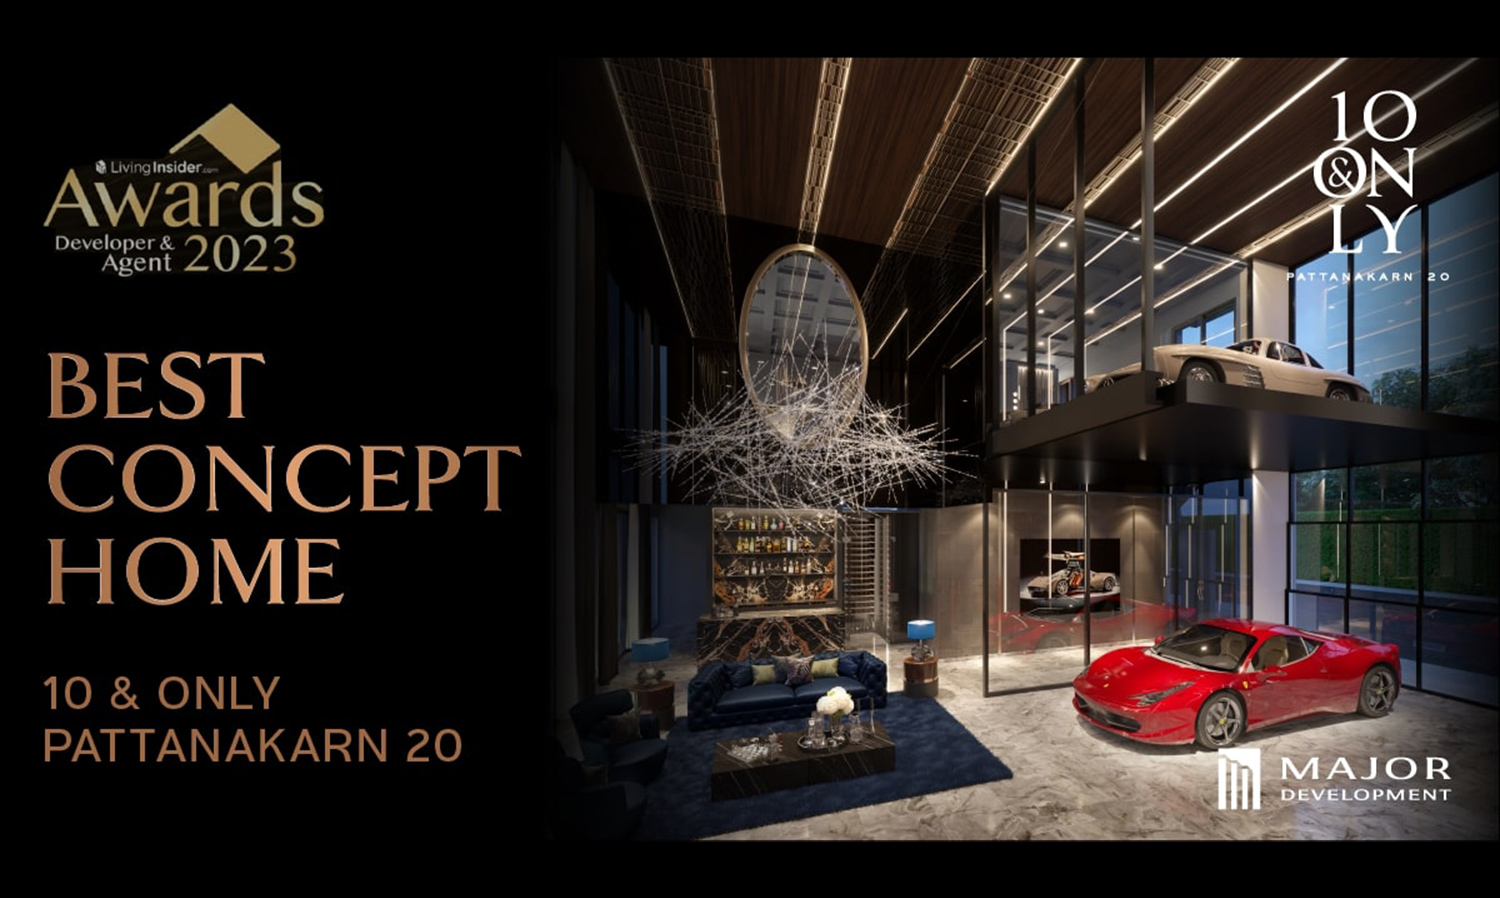 10 & Only Pattanakarn 20 โดย เมเจอร์ ดีเวลลอปเม้นท์ คว้ารางวัล Best Concept Home ย้ำความเข้าใจในอินไซต์ผู้บริโภคอย่างแท้จริง